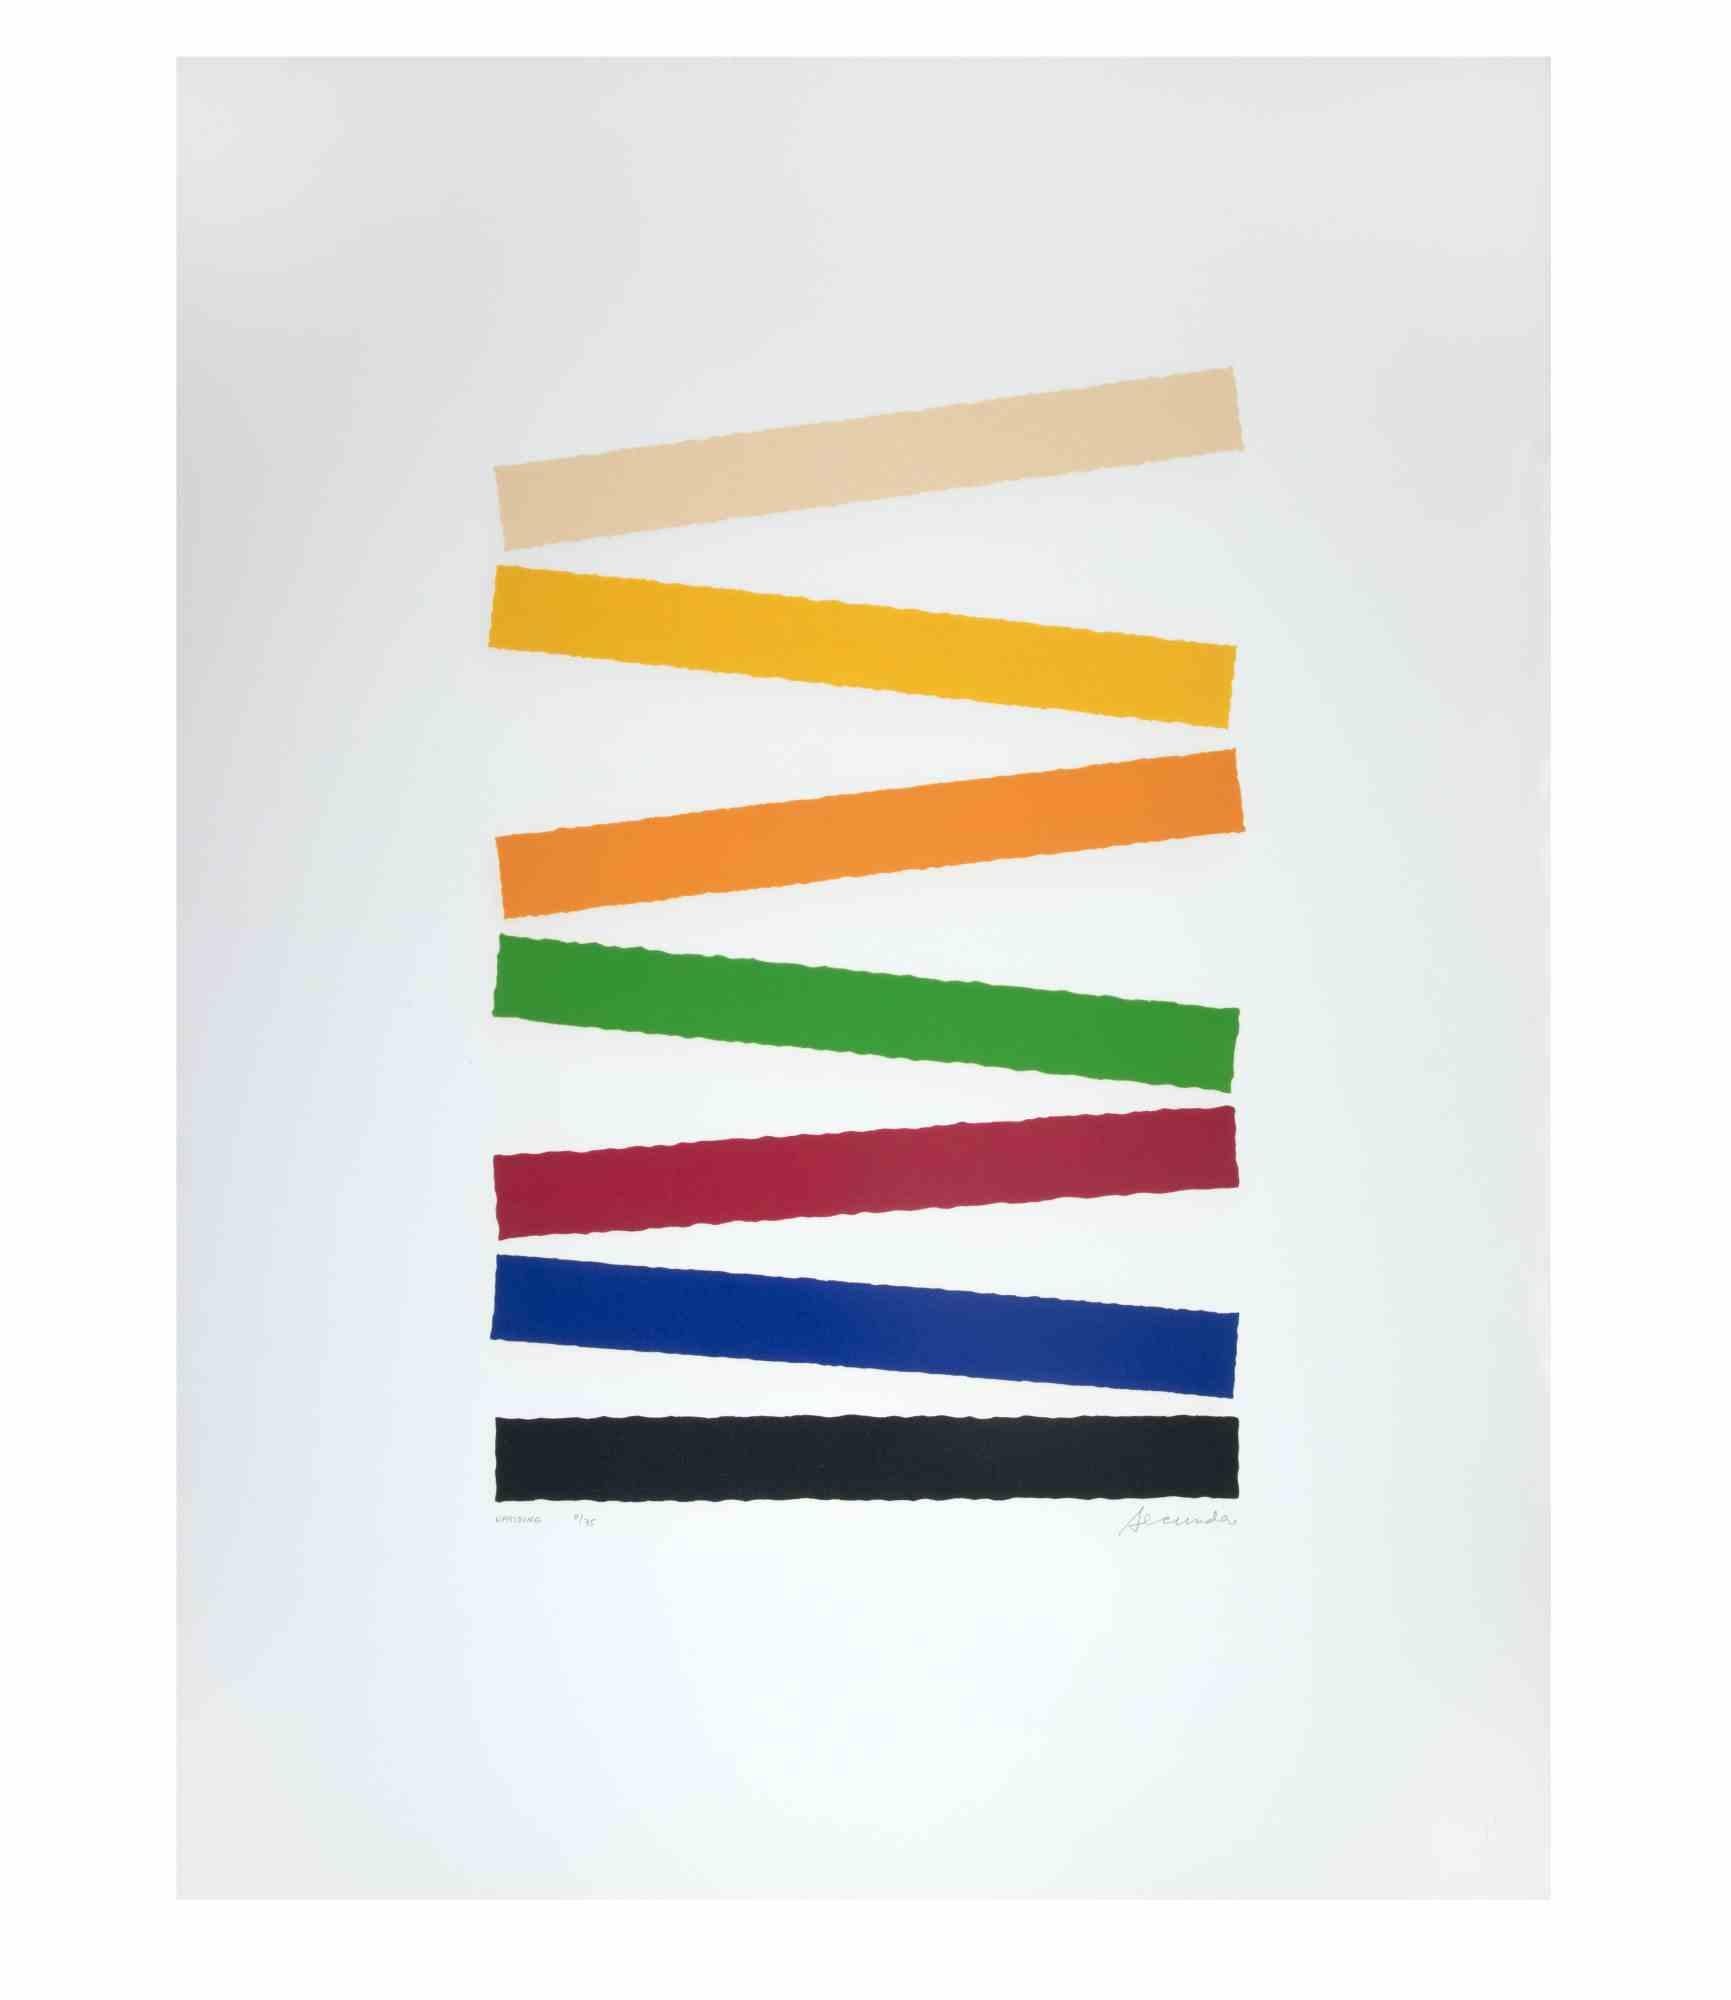 Uprising ist ein zeitgenössisches Kunstwerk von Arthur Secunda aus dem Jahr 1979.

Gemischtfarbige Radierung.

Handsigniert am unteren Rand.

Am linken unteren Rand nummeriert und betitelt.

Auflage von 8/75. 

Arthur Secunda (1927-2022) war ein